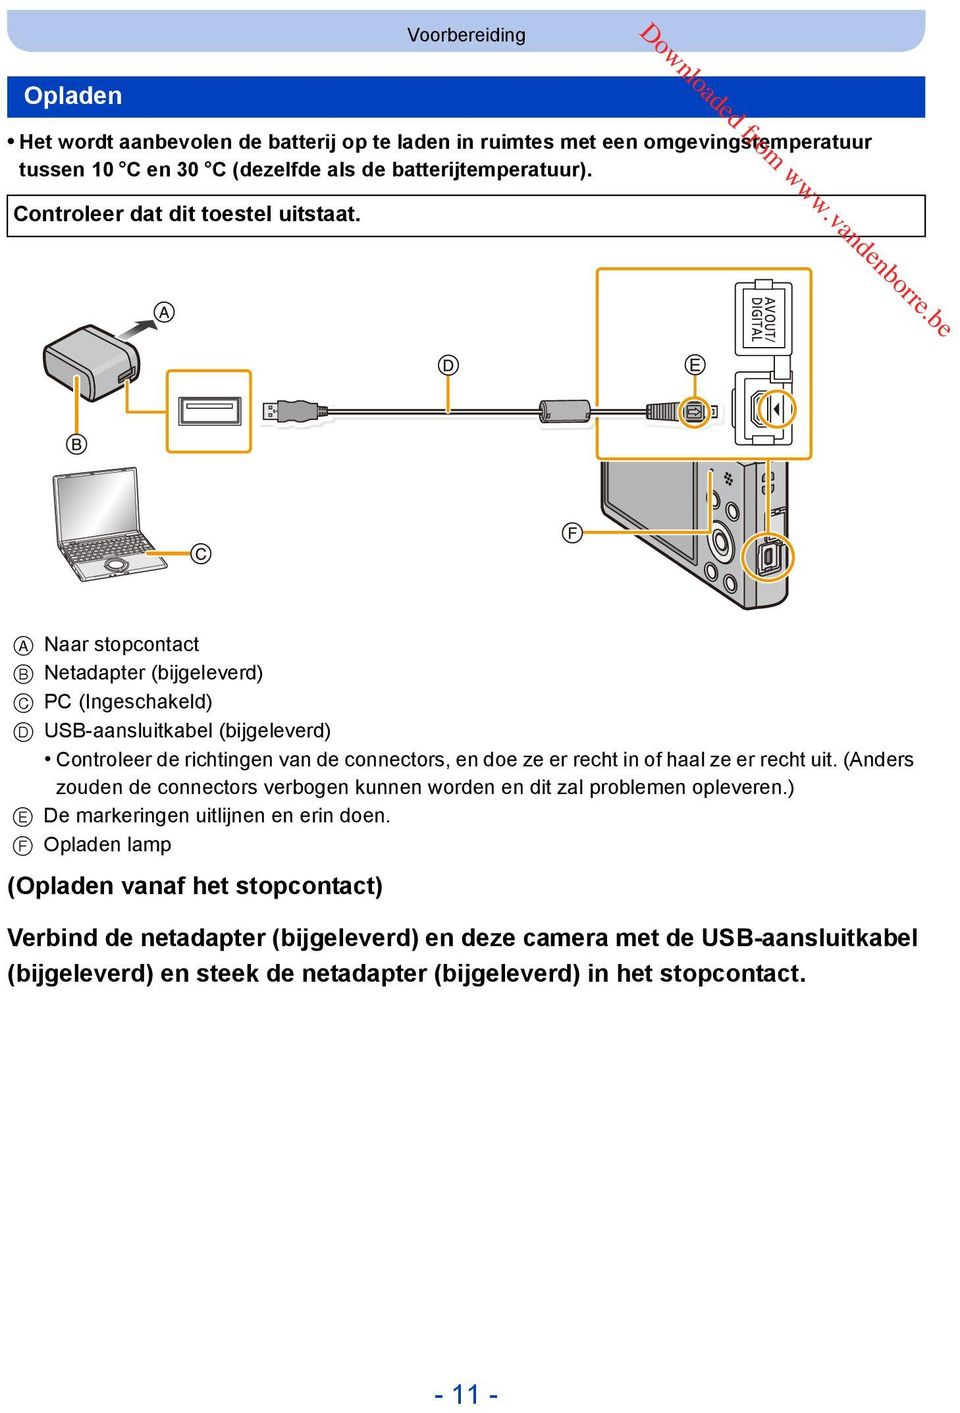 A Naar stopcontact B Netadapter (bijgeleverd) C PC (Ingeschakeld) D USB-aansluitkabel (bijgeleverd) Controleer de richtingen van de connectors, en doe ze er recht in of haal ze er